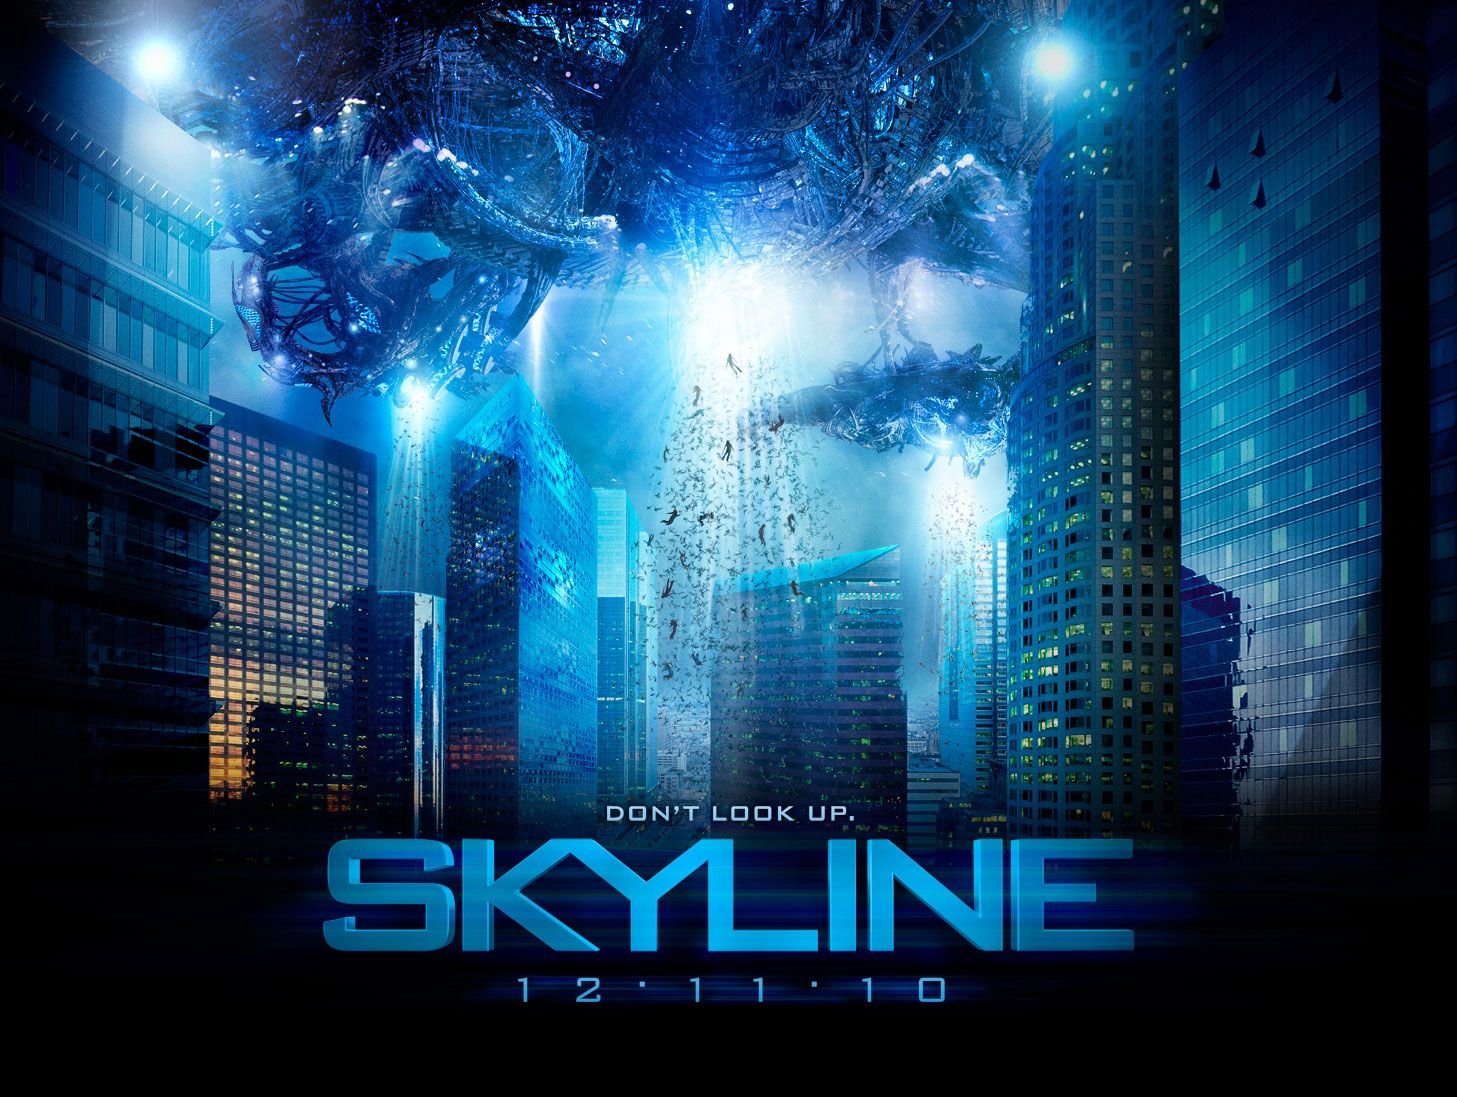 skyline 2010 movie review